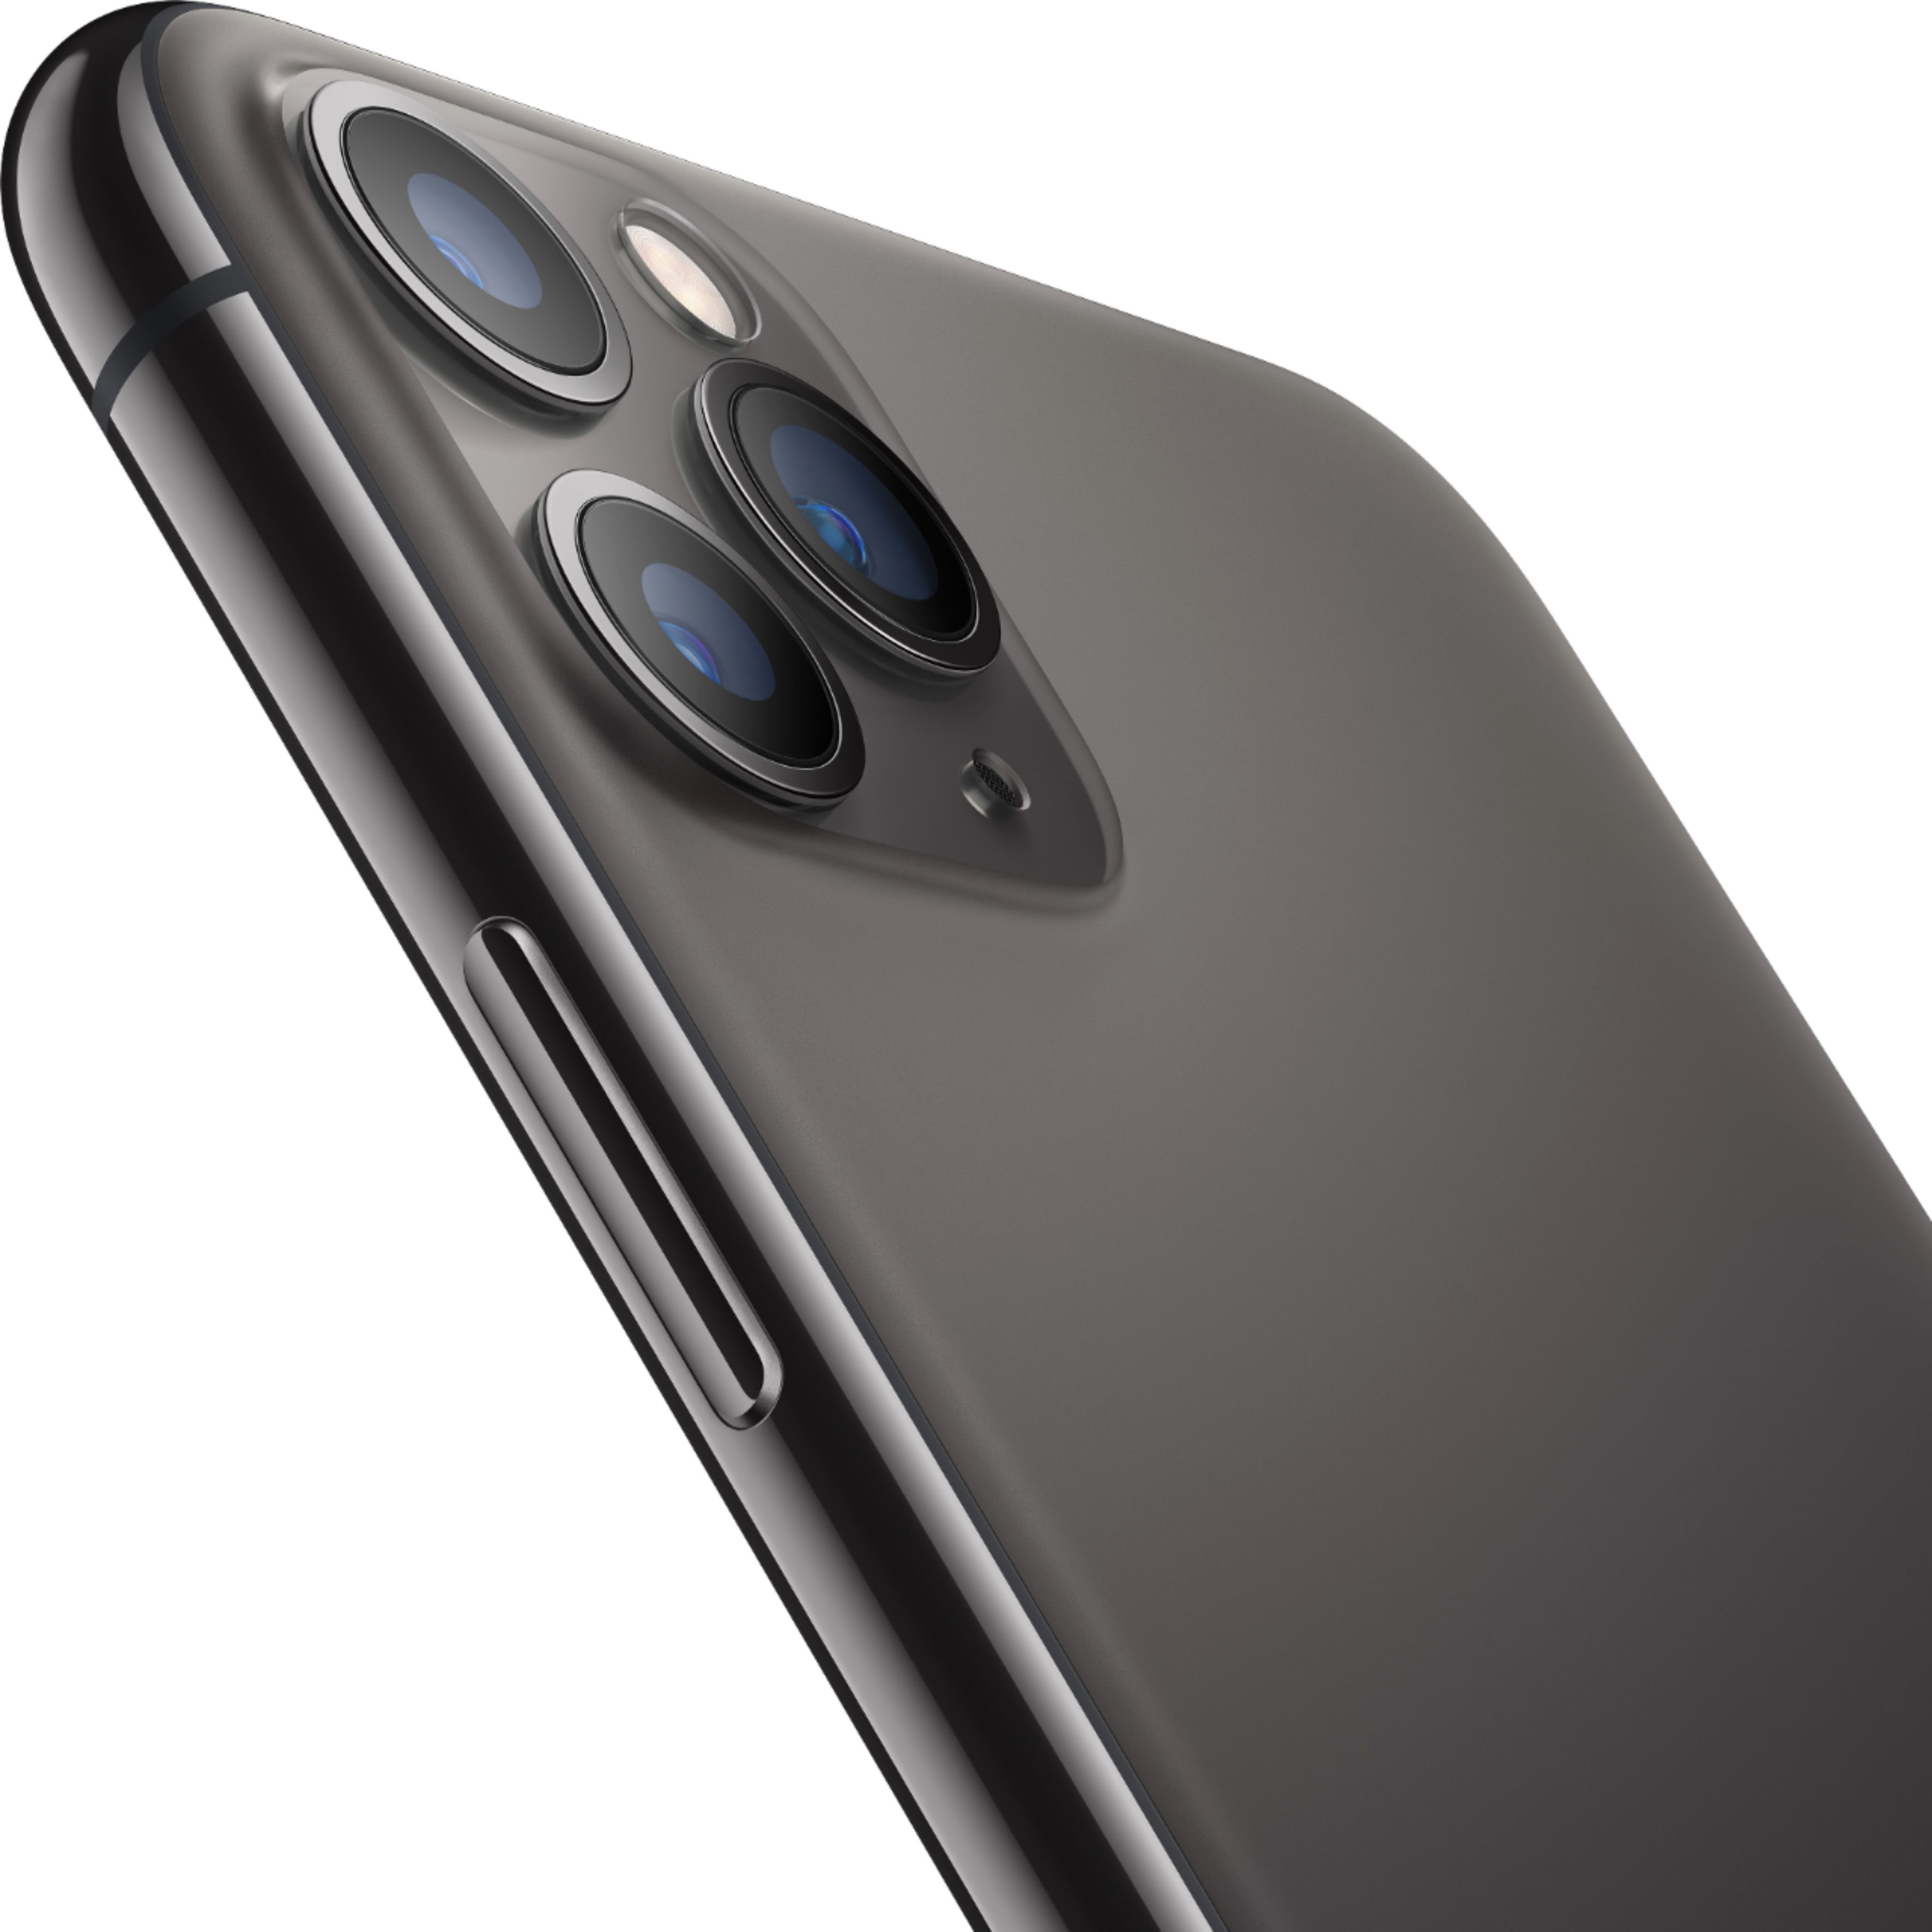 スマートフォン/携帯電話 スマートフォン本体 Apple iPhone 11 Pro 256GB Space Gray (T-Mobile) MWCM2LL/A 